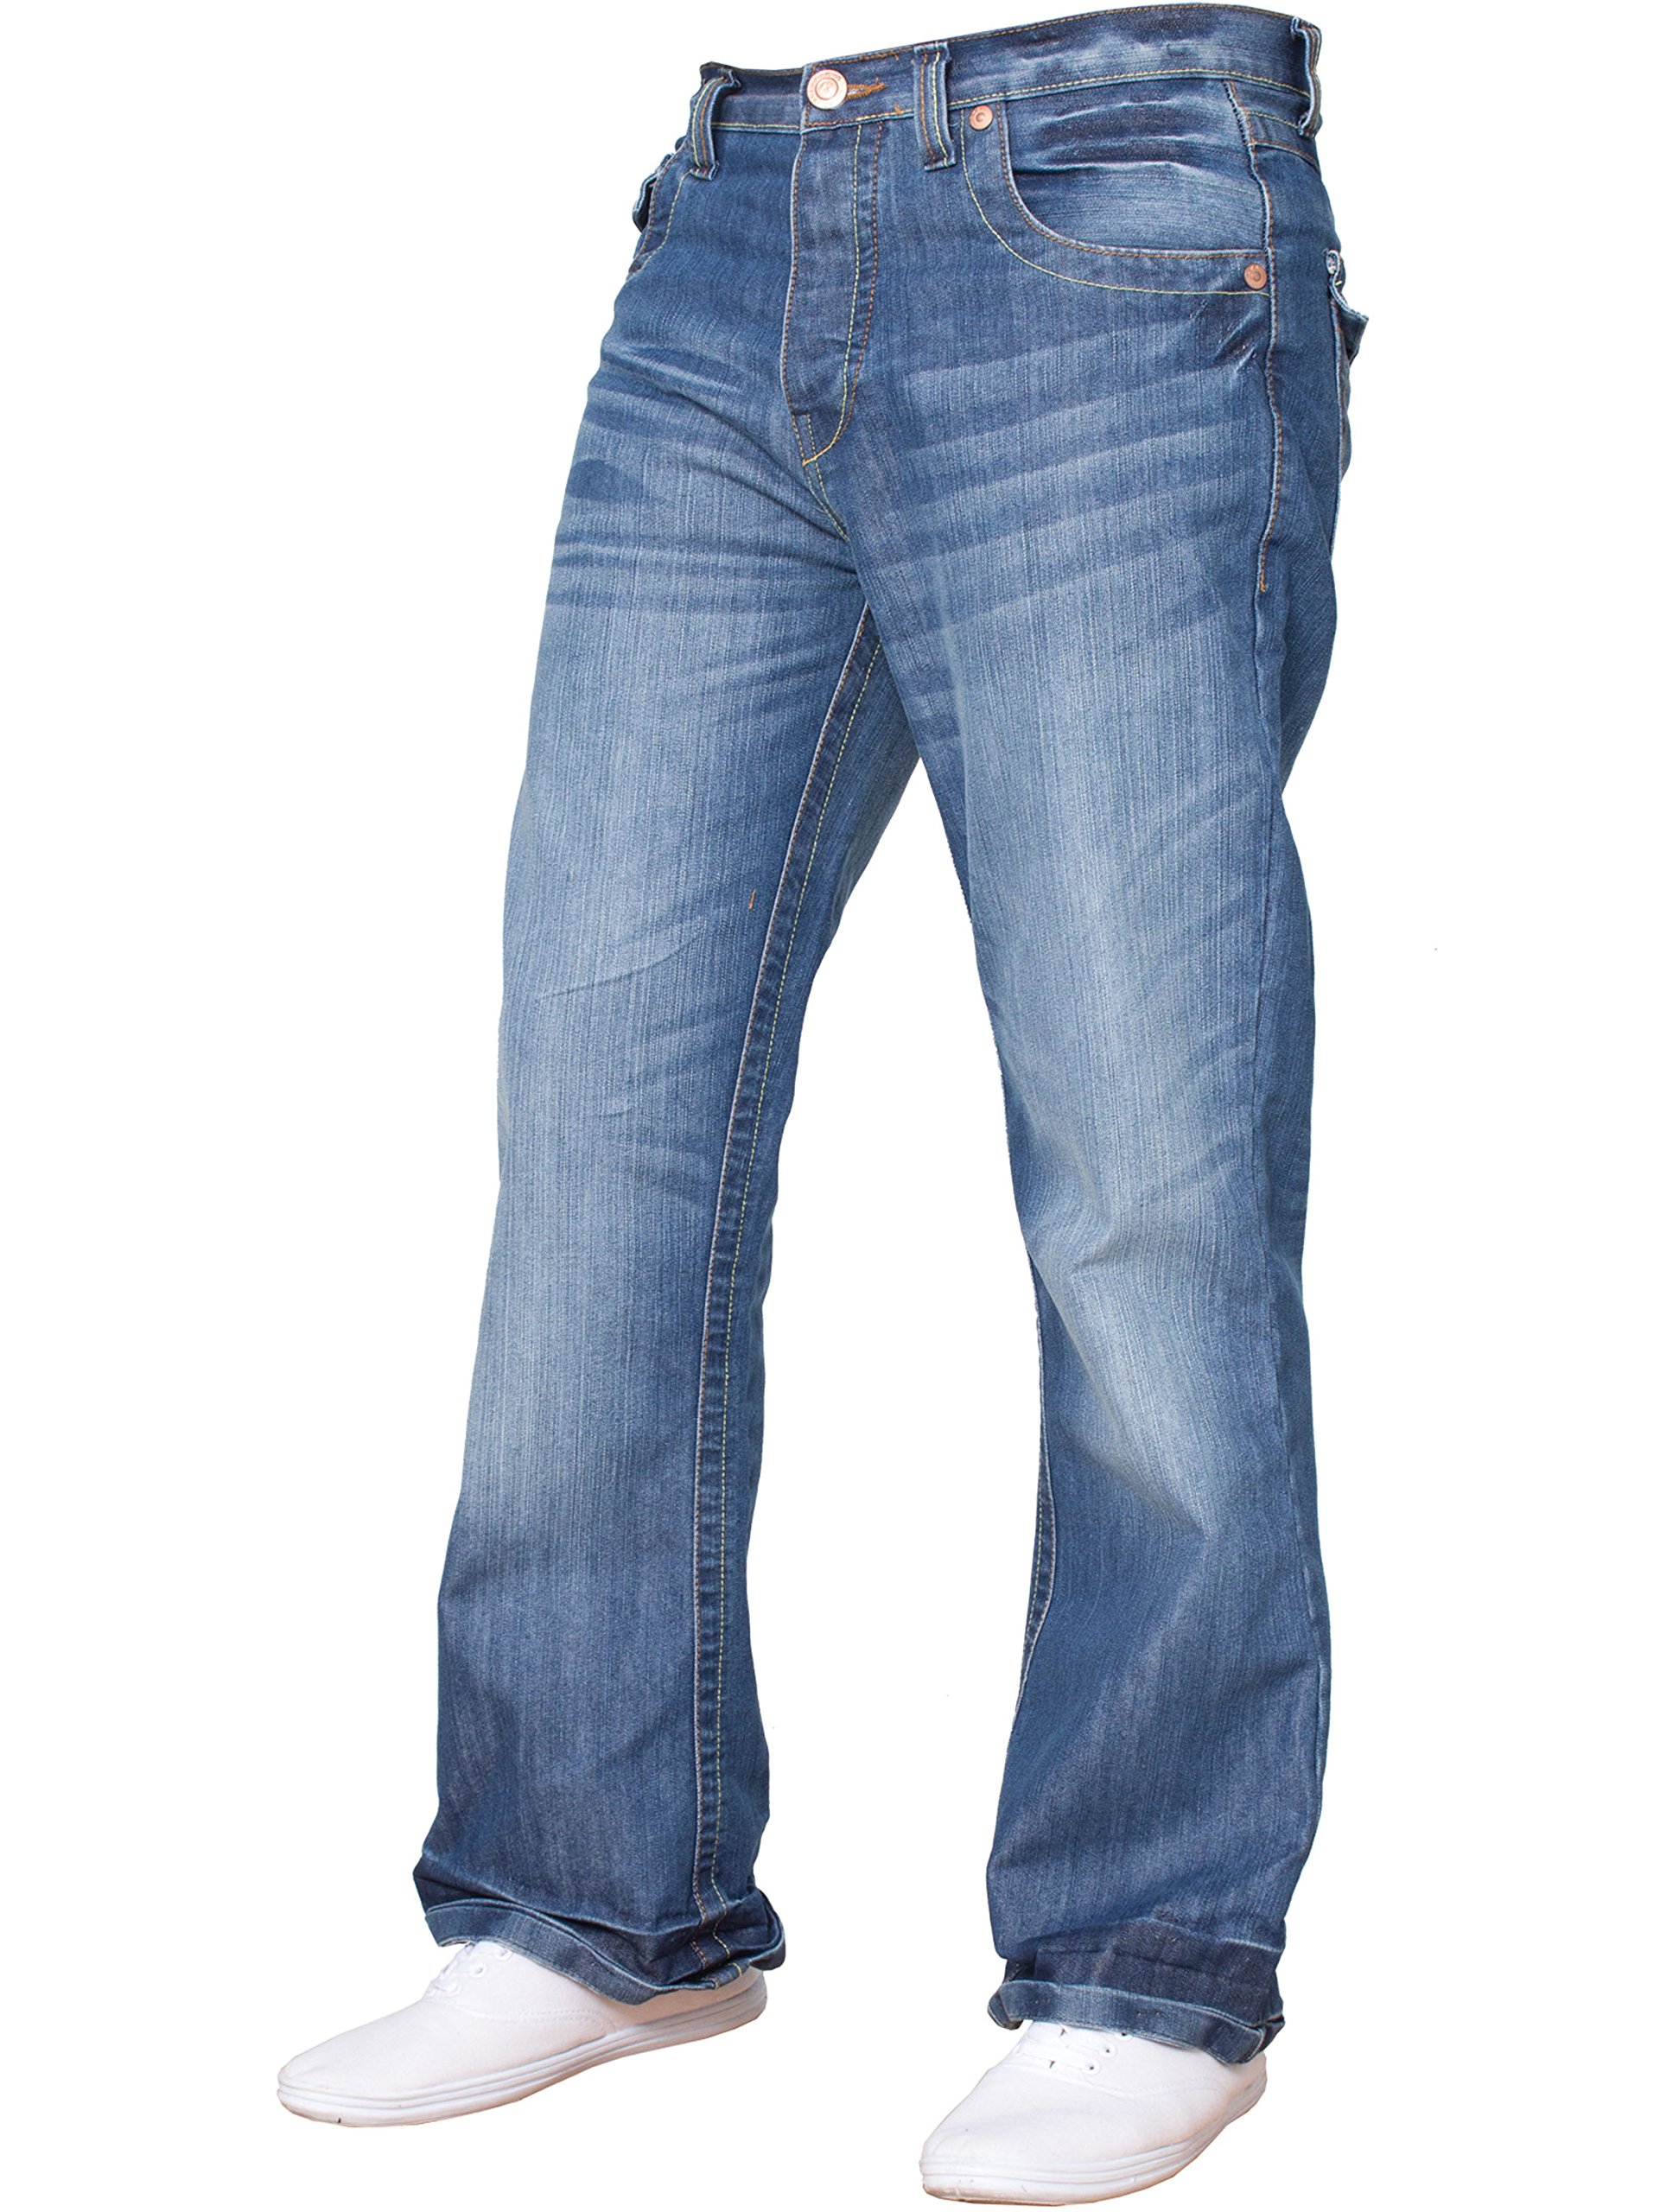 BNWT Herren-Jeans, Bootcut, ausgestellt, große King Size, weites Bein, Blau, Denim Gr. Bundweite: 97 cm, beinlänge: 81 cm (38 W / 32 L), Mehrfarbig